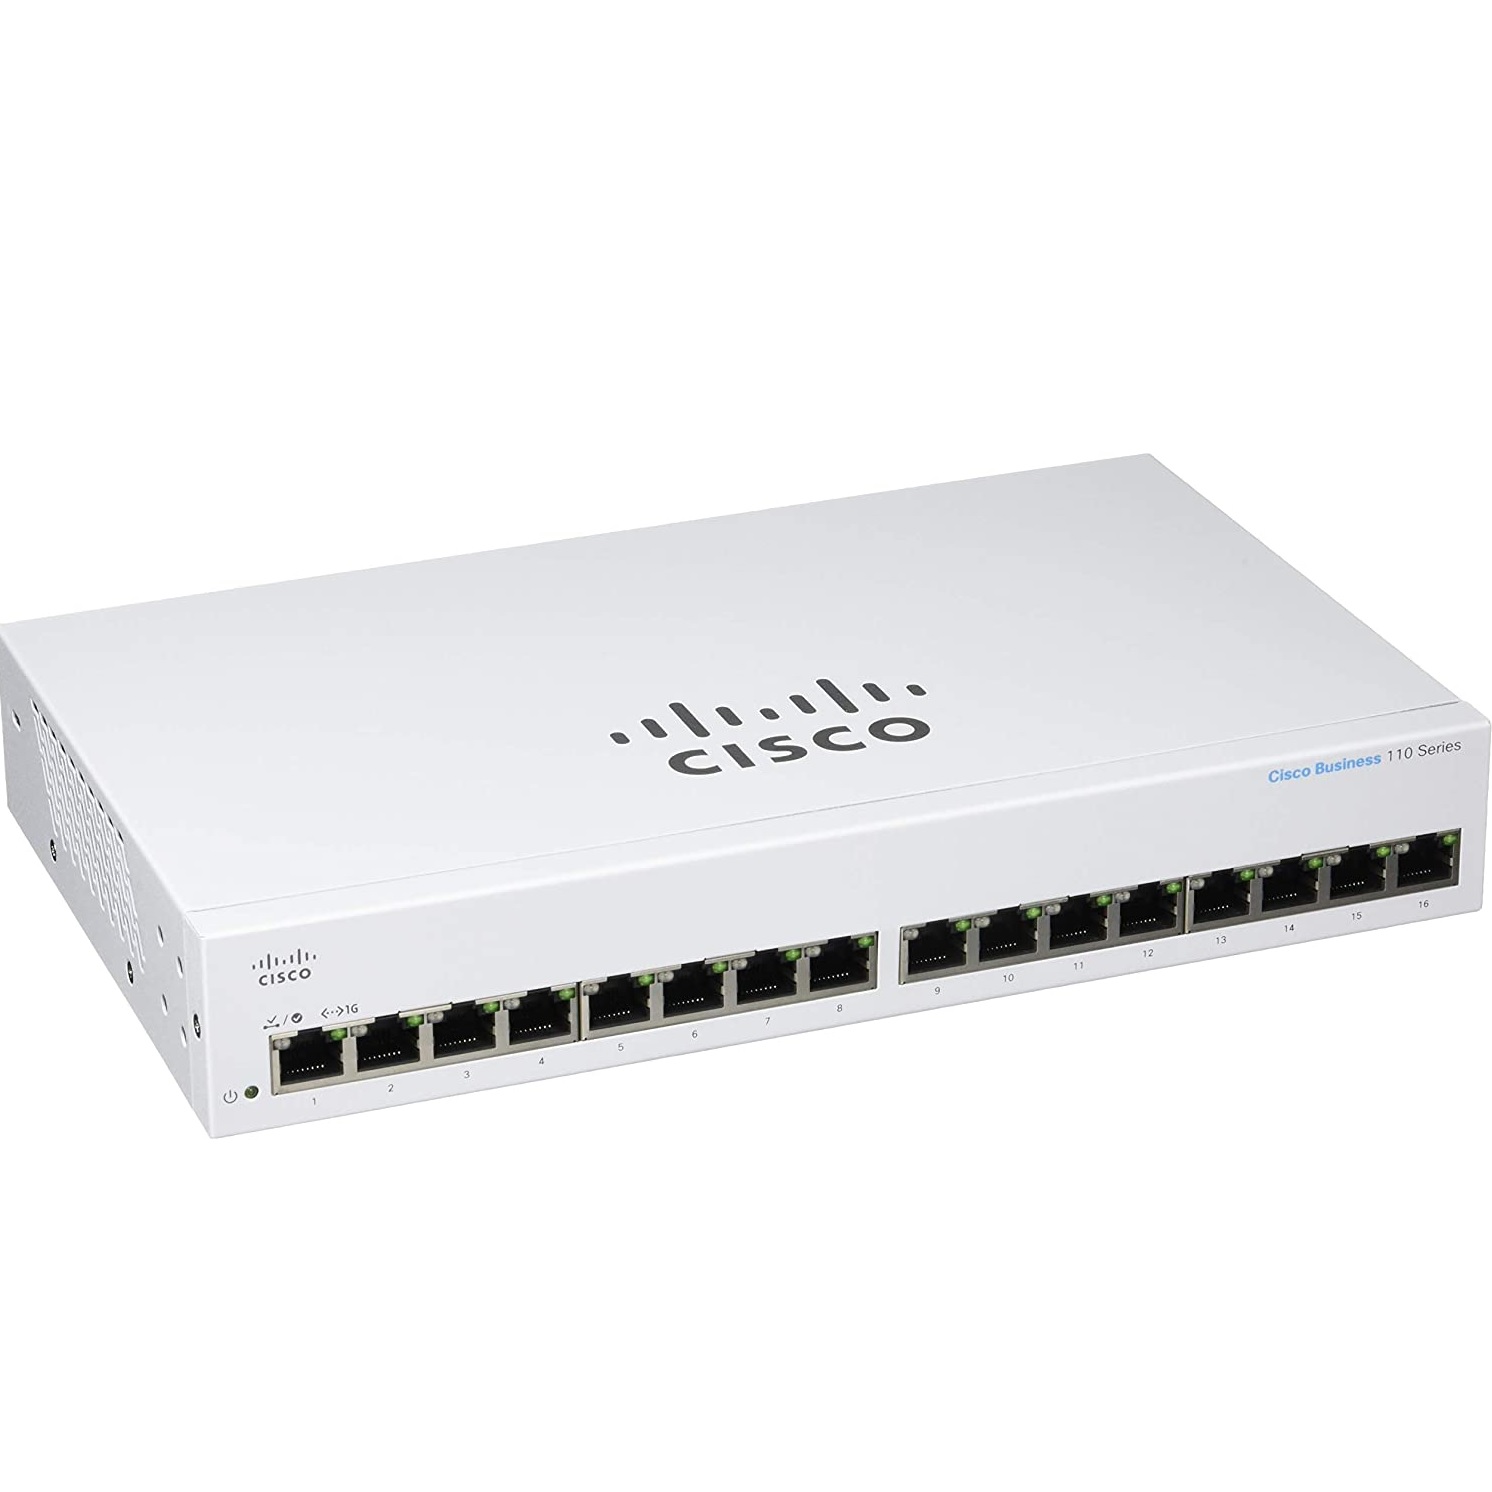 Cisco - CBS110-16T-EU -   